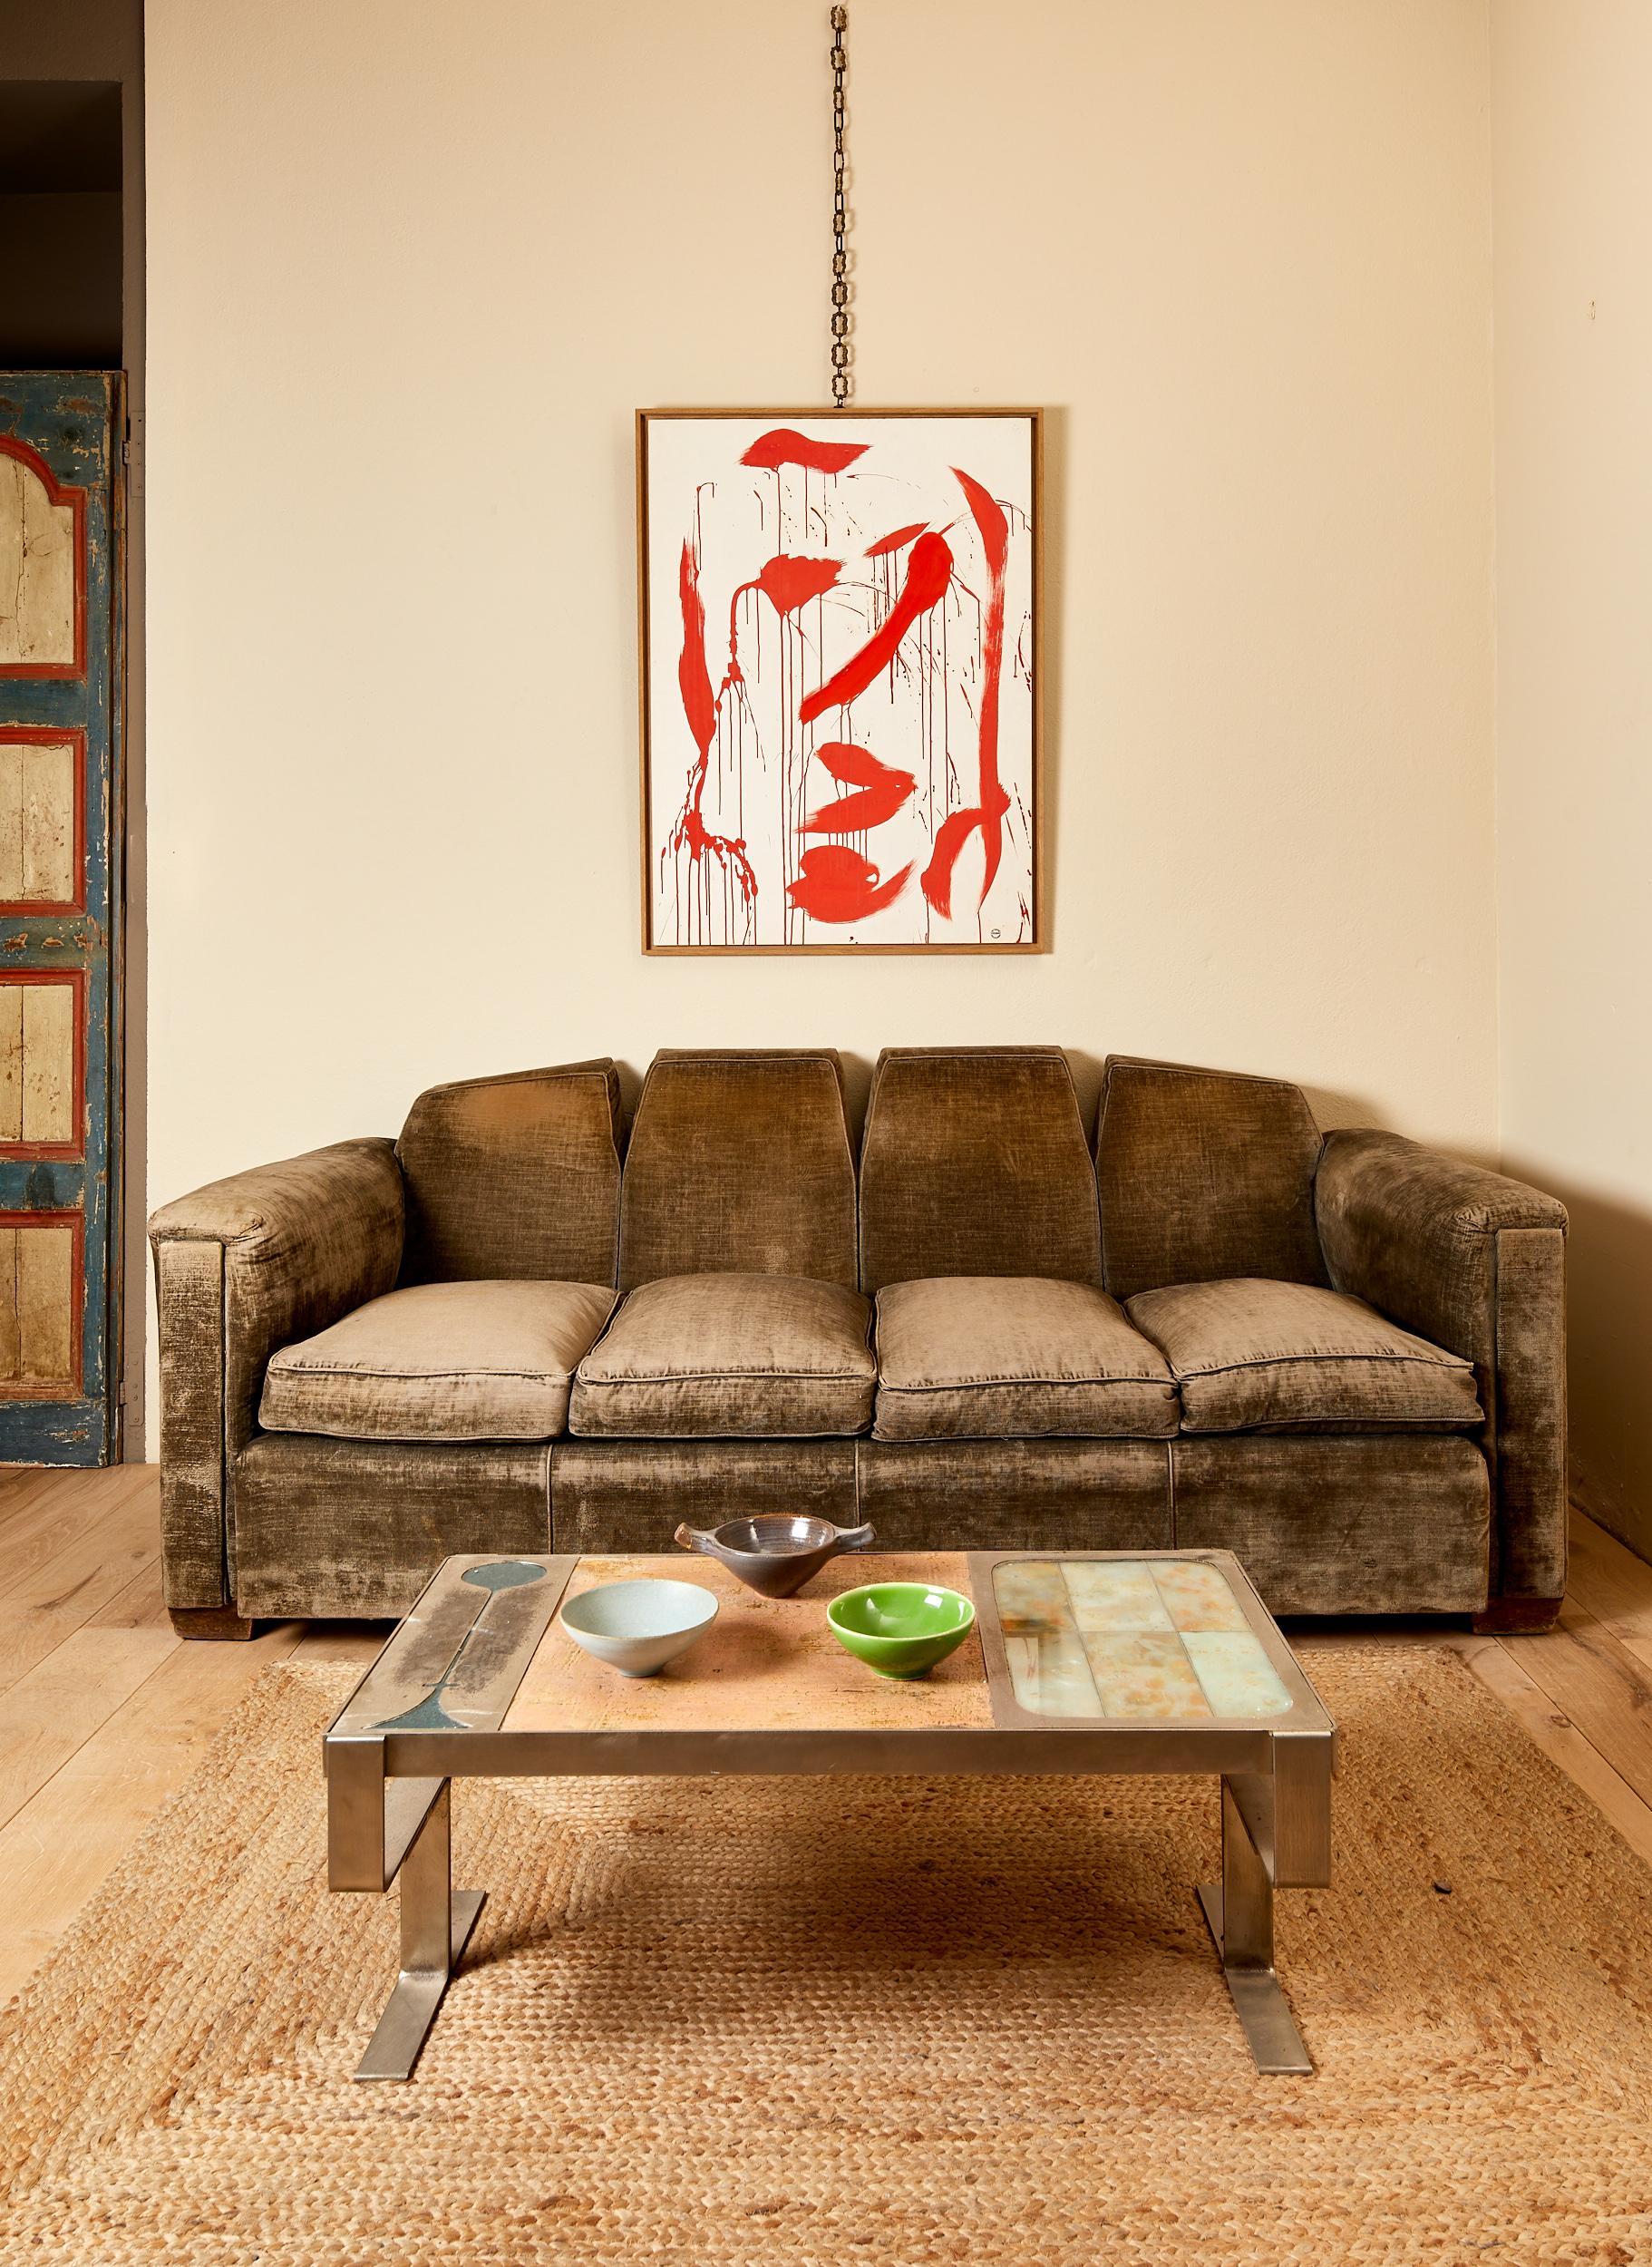 Dans le style de Paul Dupré-Lafon,
Grand canapé à trois places,
Tissu gris d'origine à refaire,
France, vers 1930.

Dimensions : 217 x 94 x 85 cm.